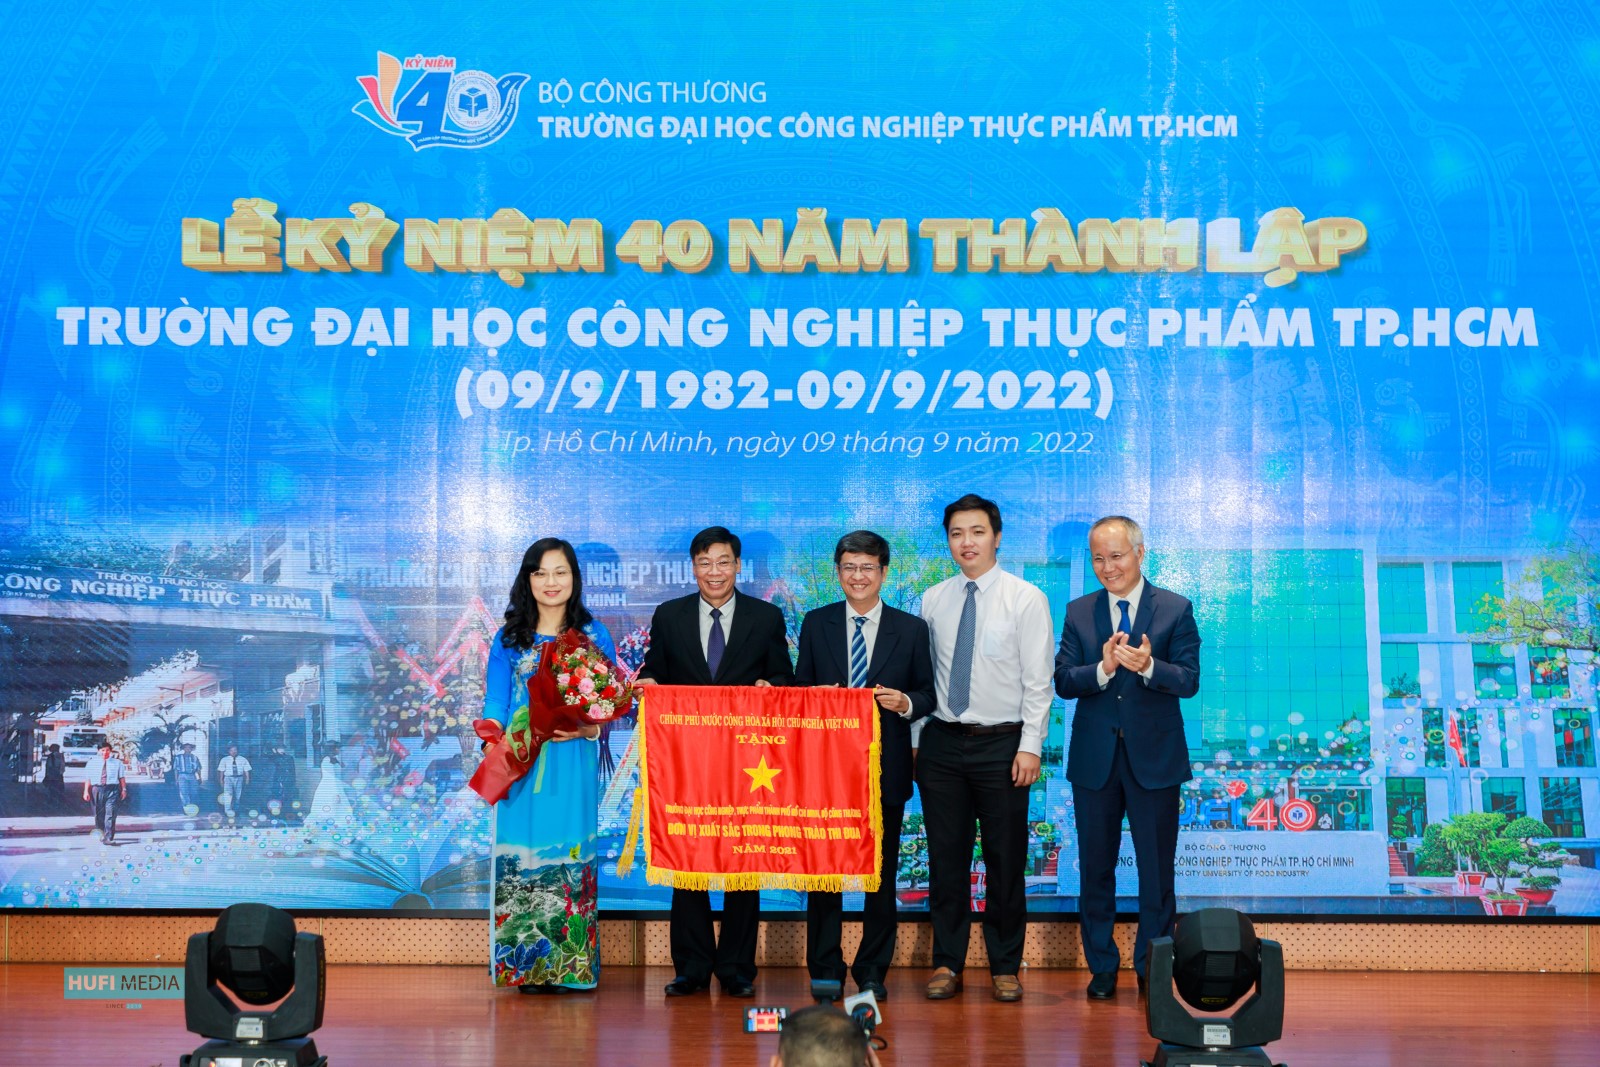 Trường ĐH Công nghiệp Thực phẩm TPHCM đón nhận Cờ thi đua của Chính phủ